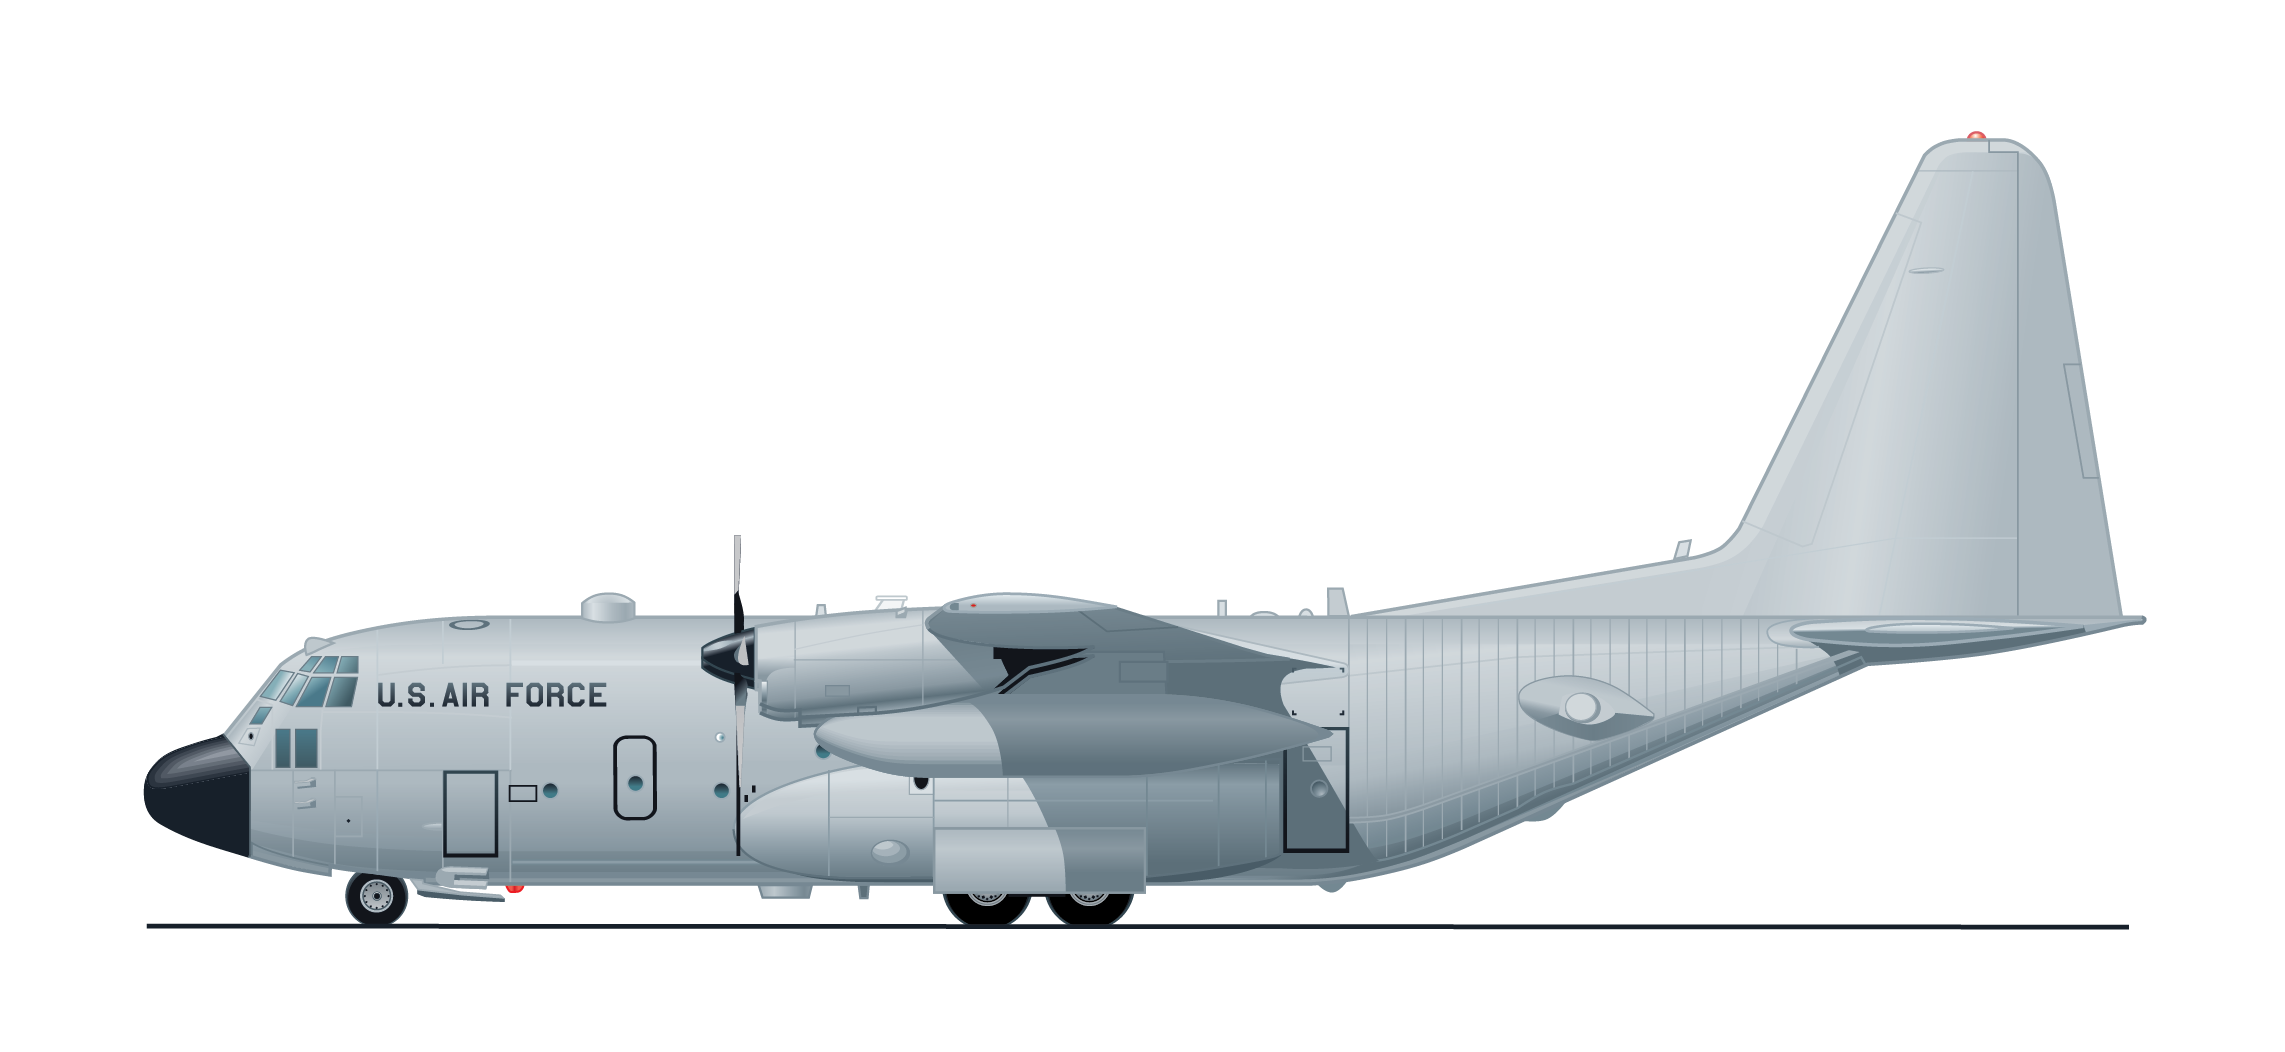 AAR L C-130H